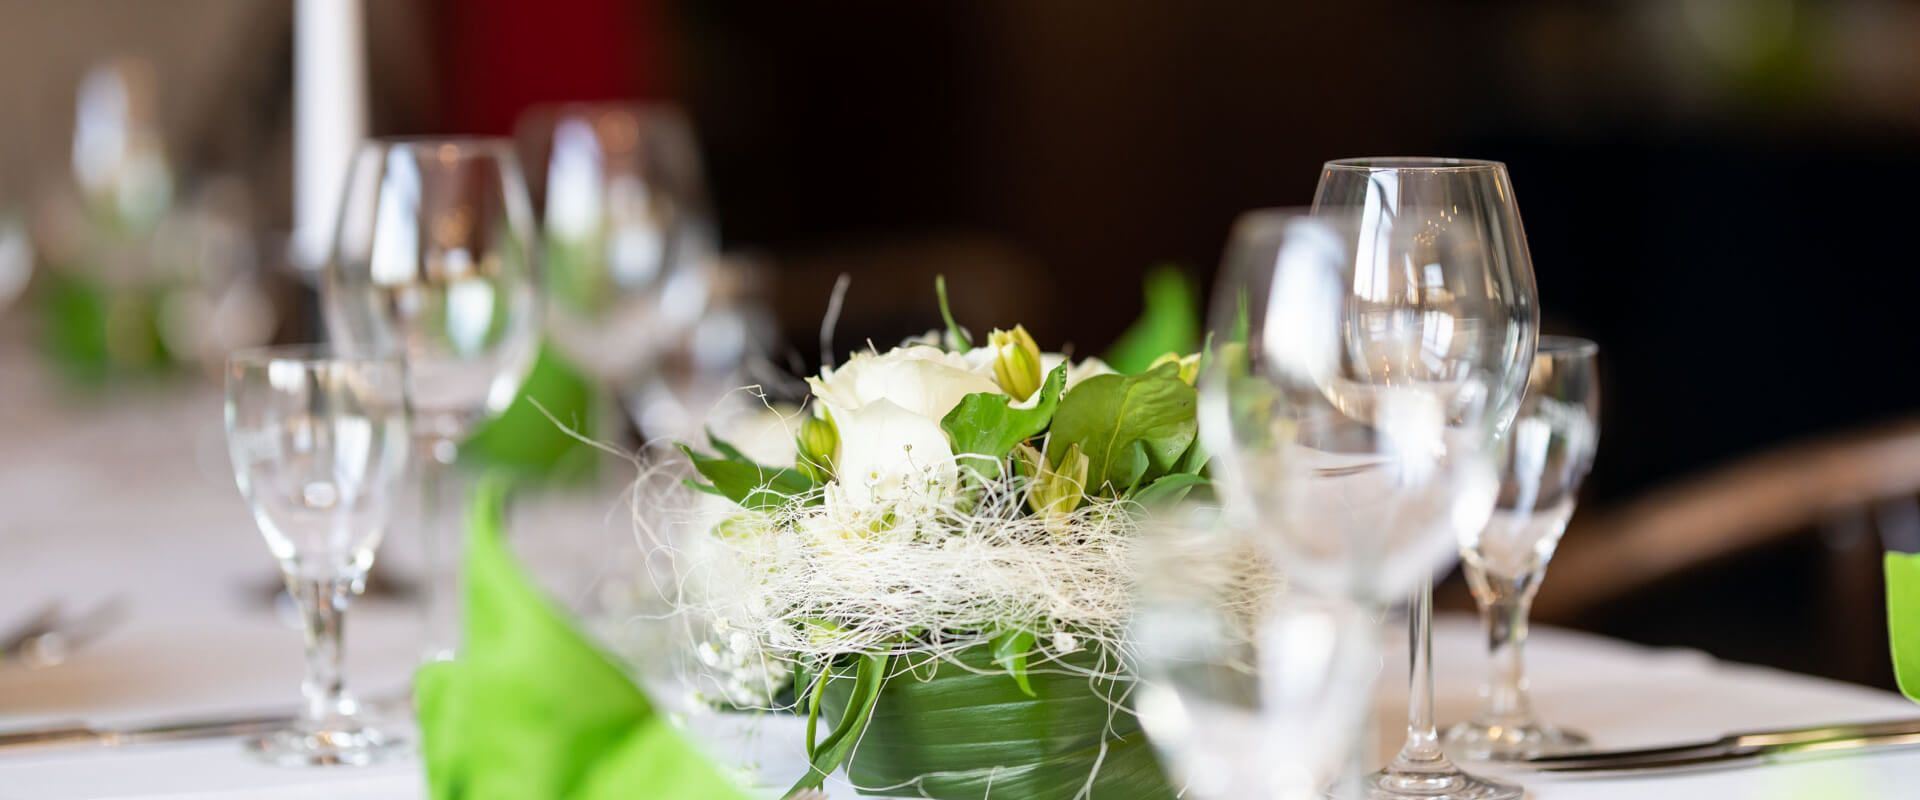 Gedeckter Tisch im Restaurant Lübsche Thorweide mit Gläsern, grünen Servietten und Blumenarrangement